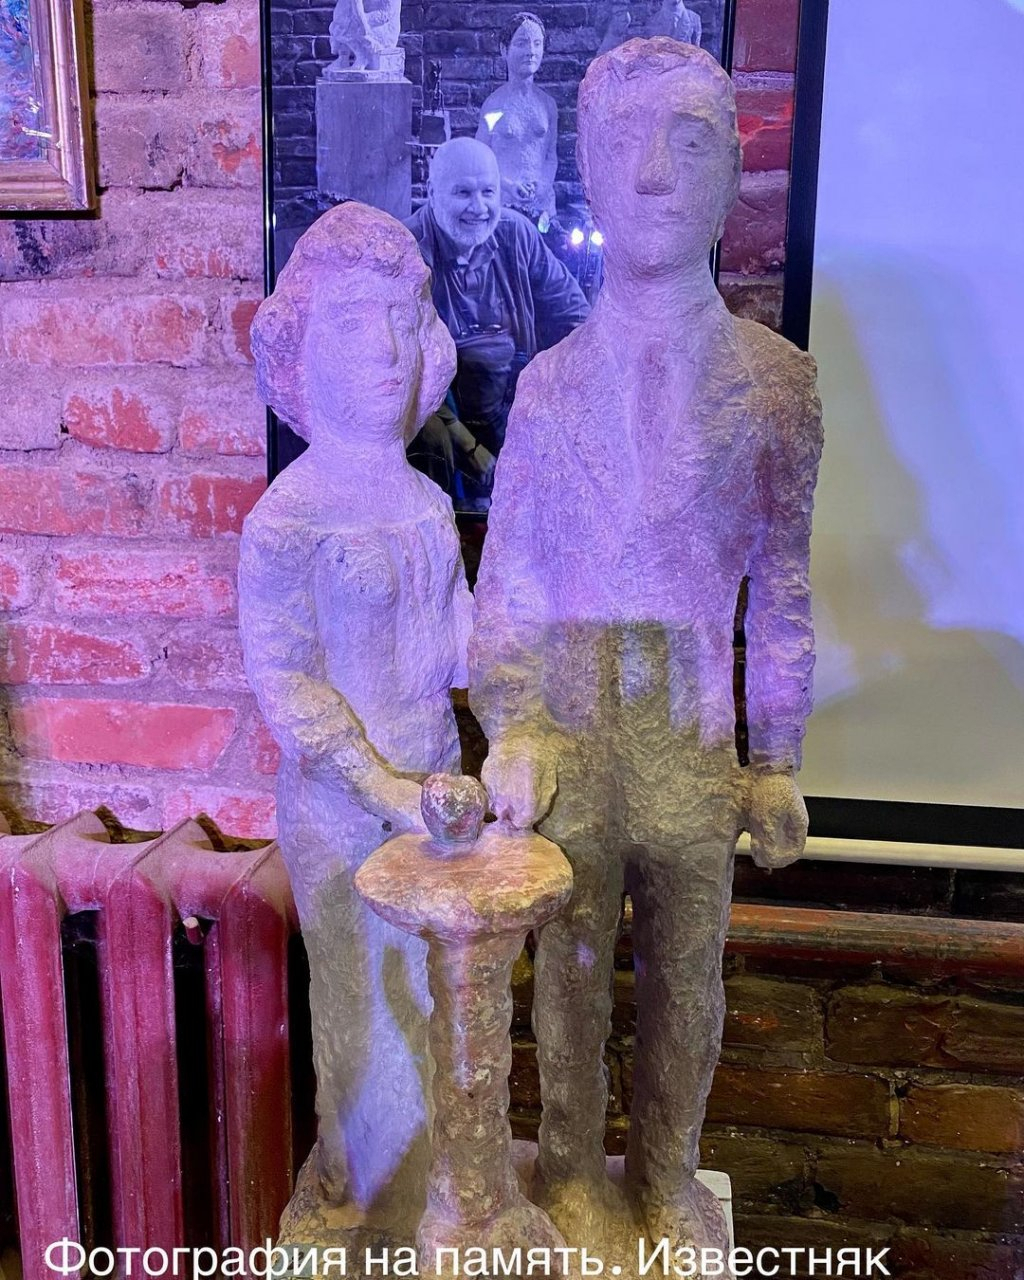 Нижегородский скульптор создал статую Никитина с женой